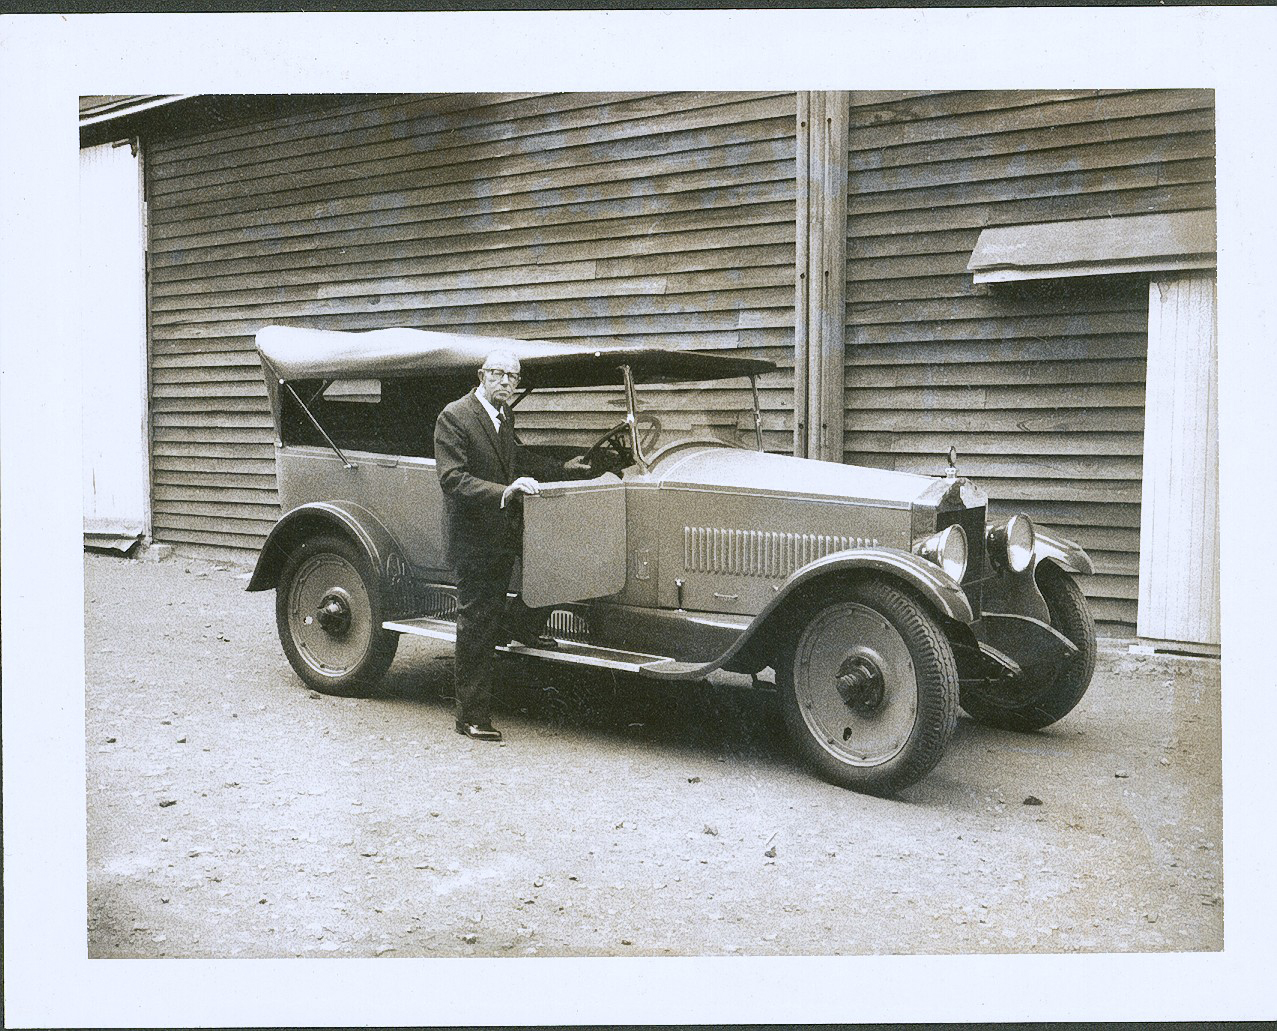 1923 Australian Six model H23 tourer